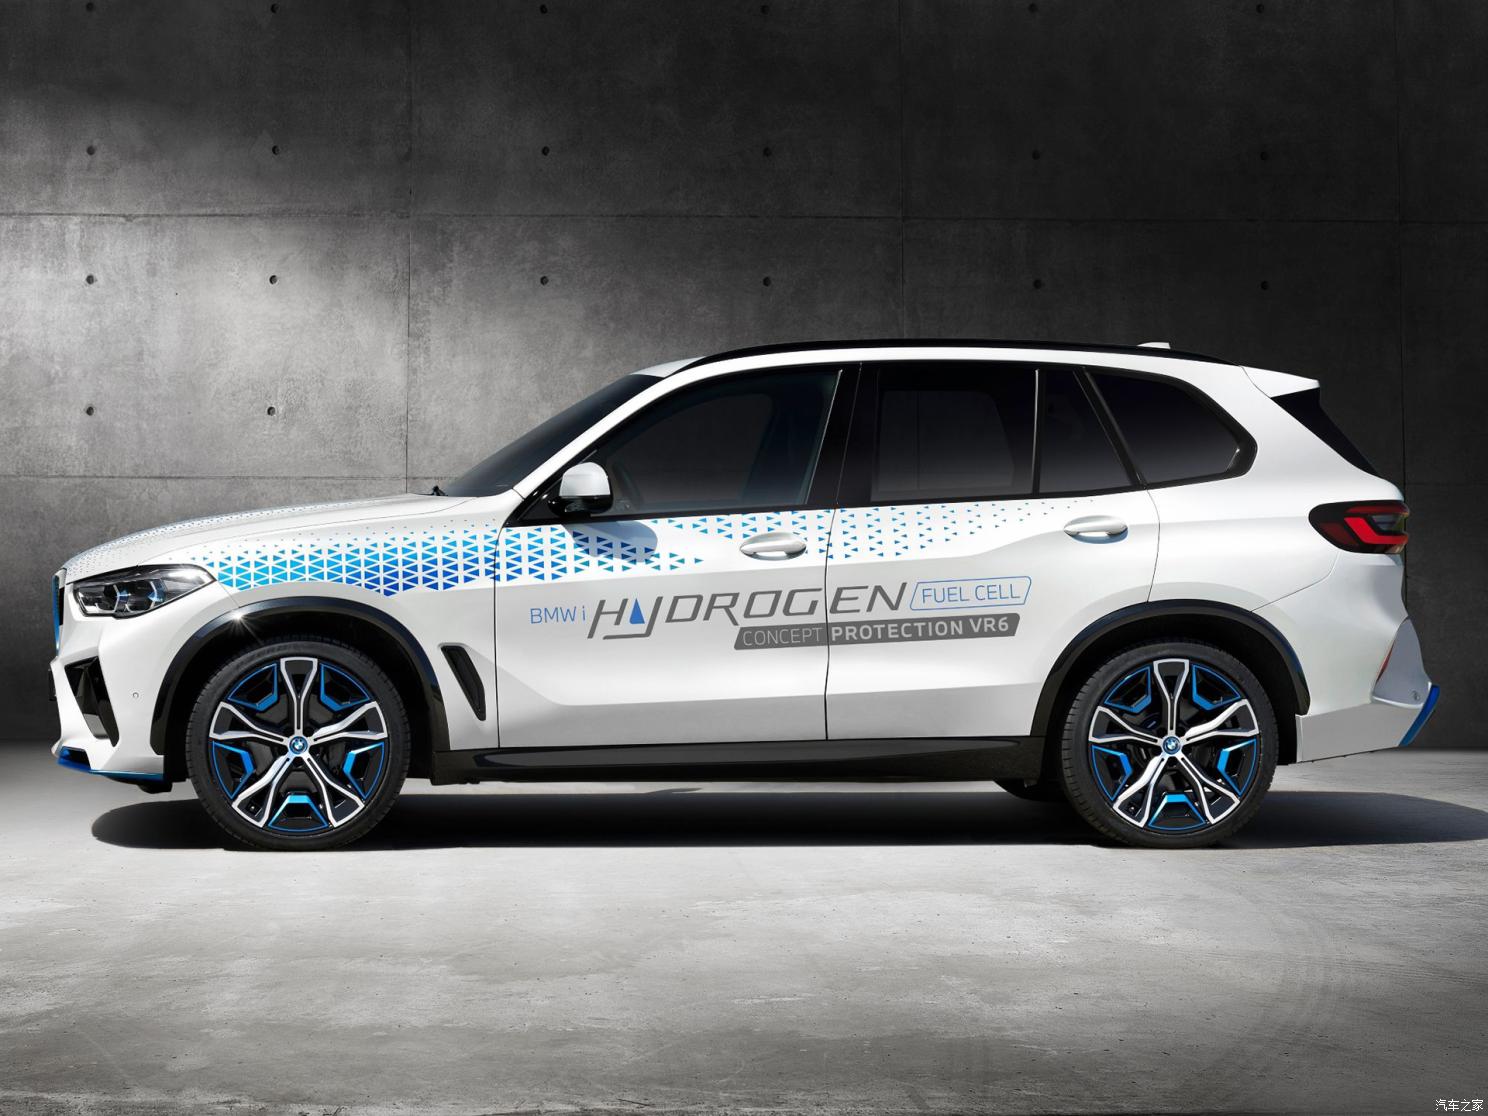 宝马(进口) 宝马iX5 2021款 Hydrogen Protection VR6 概念车